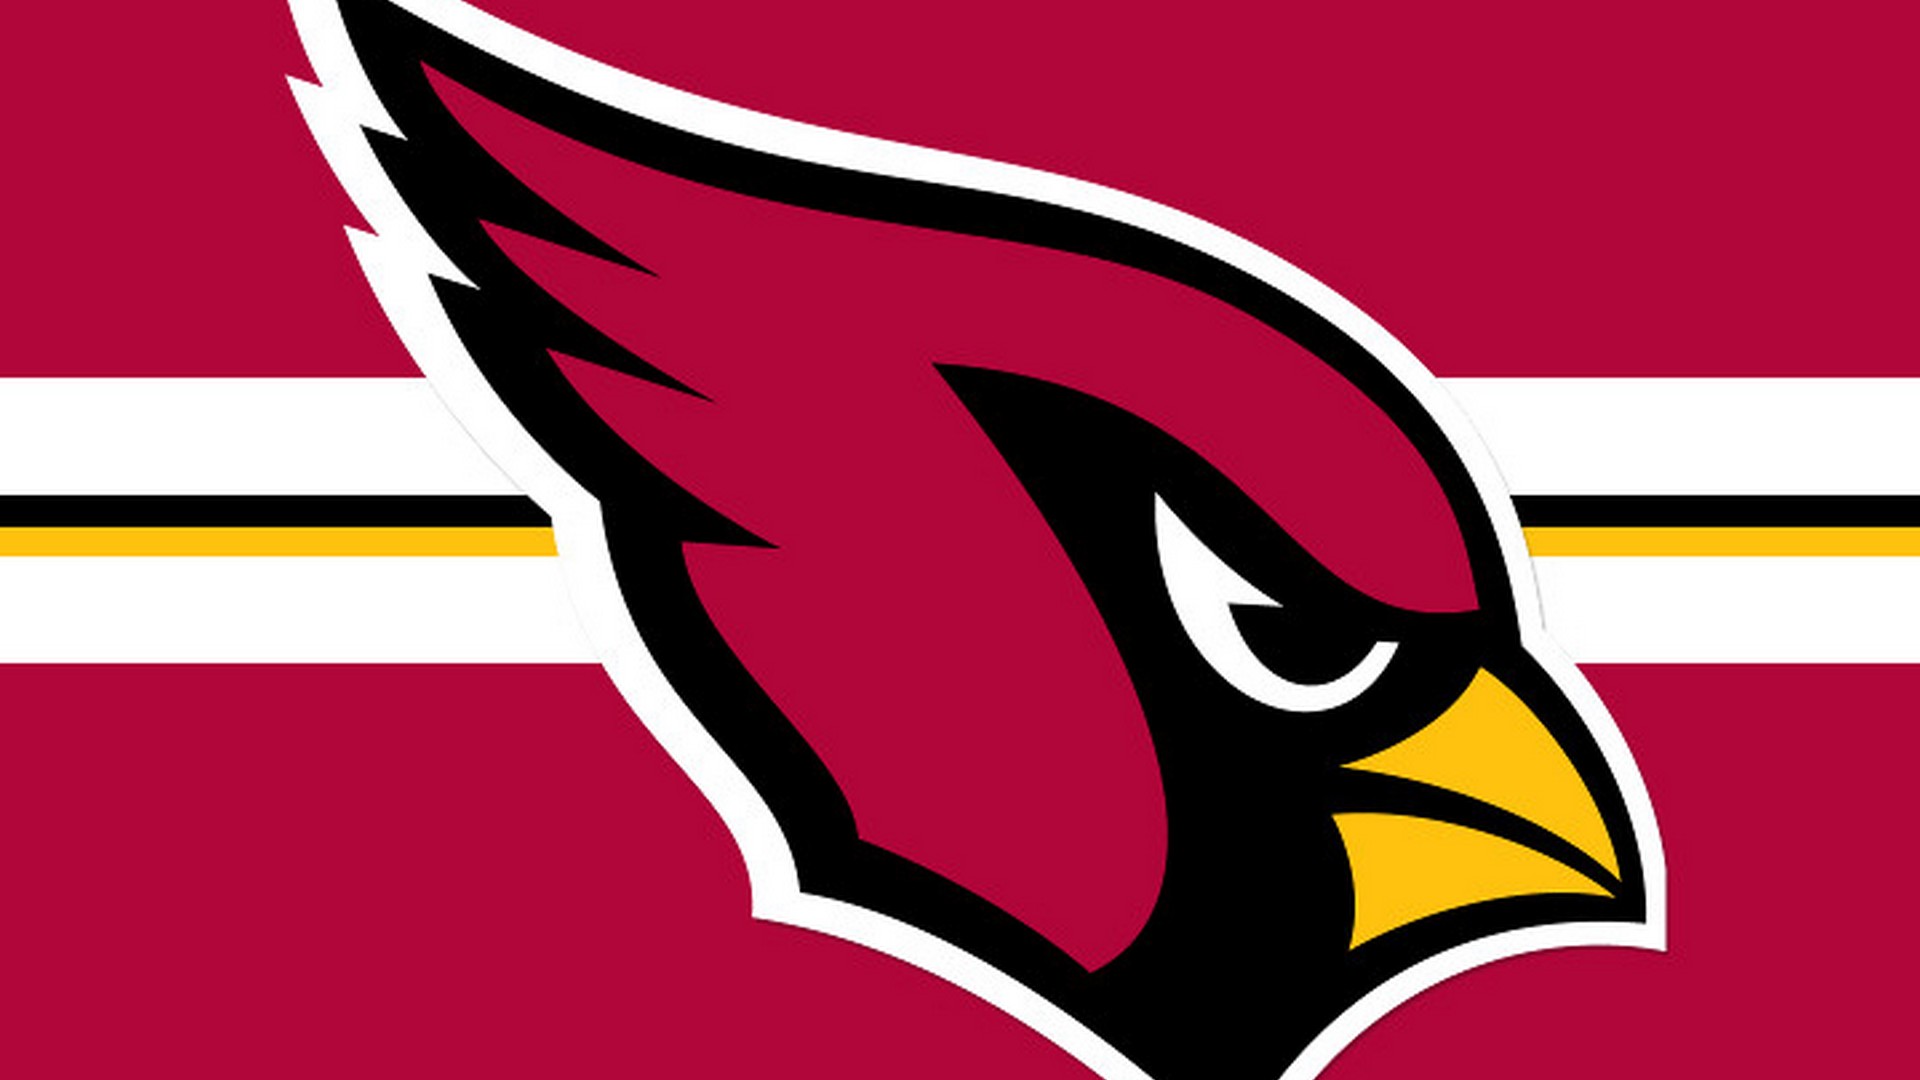 HD Arizona Cardinals Backgrounds 1920x1080